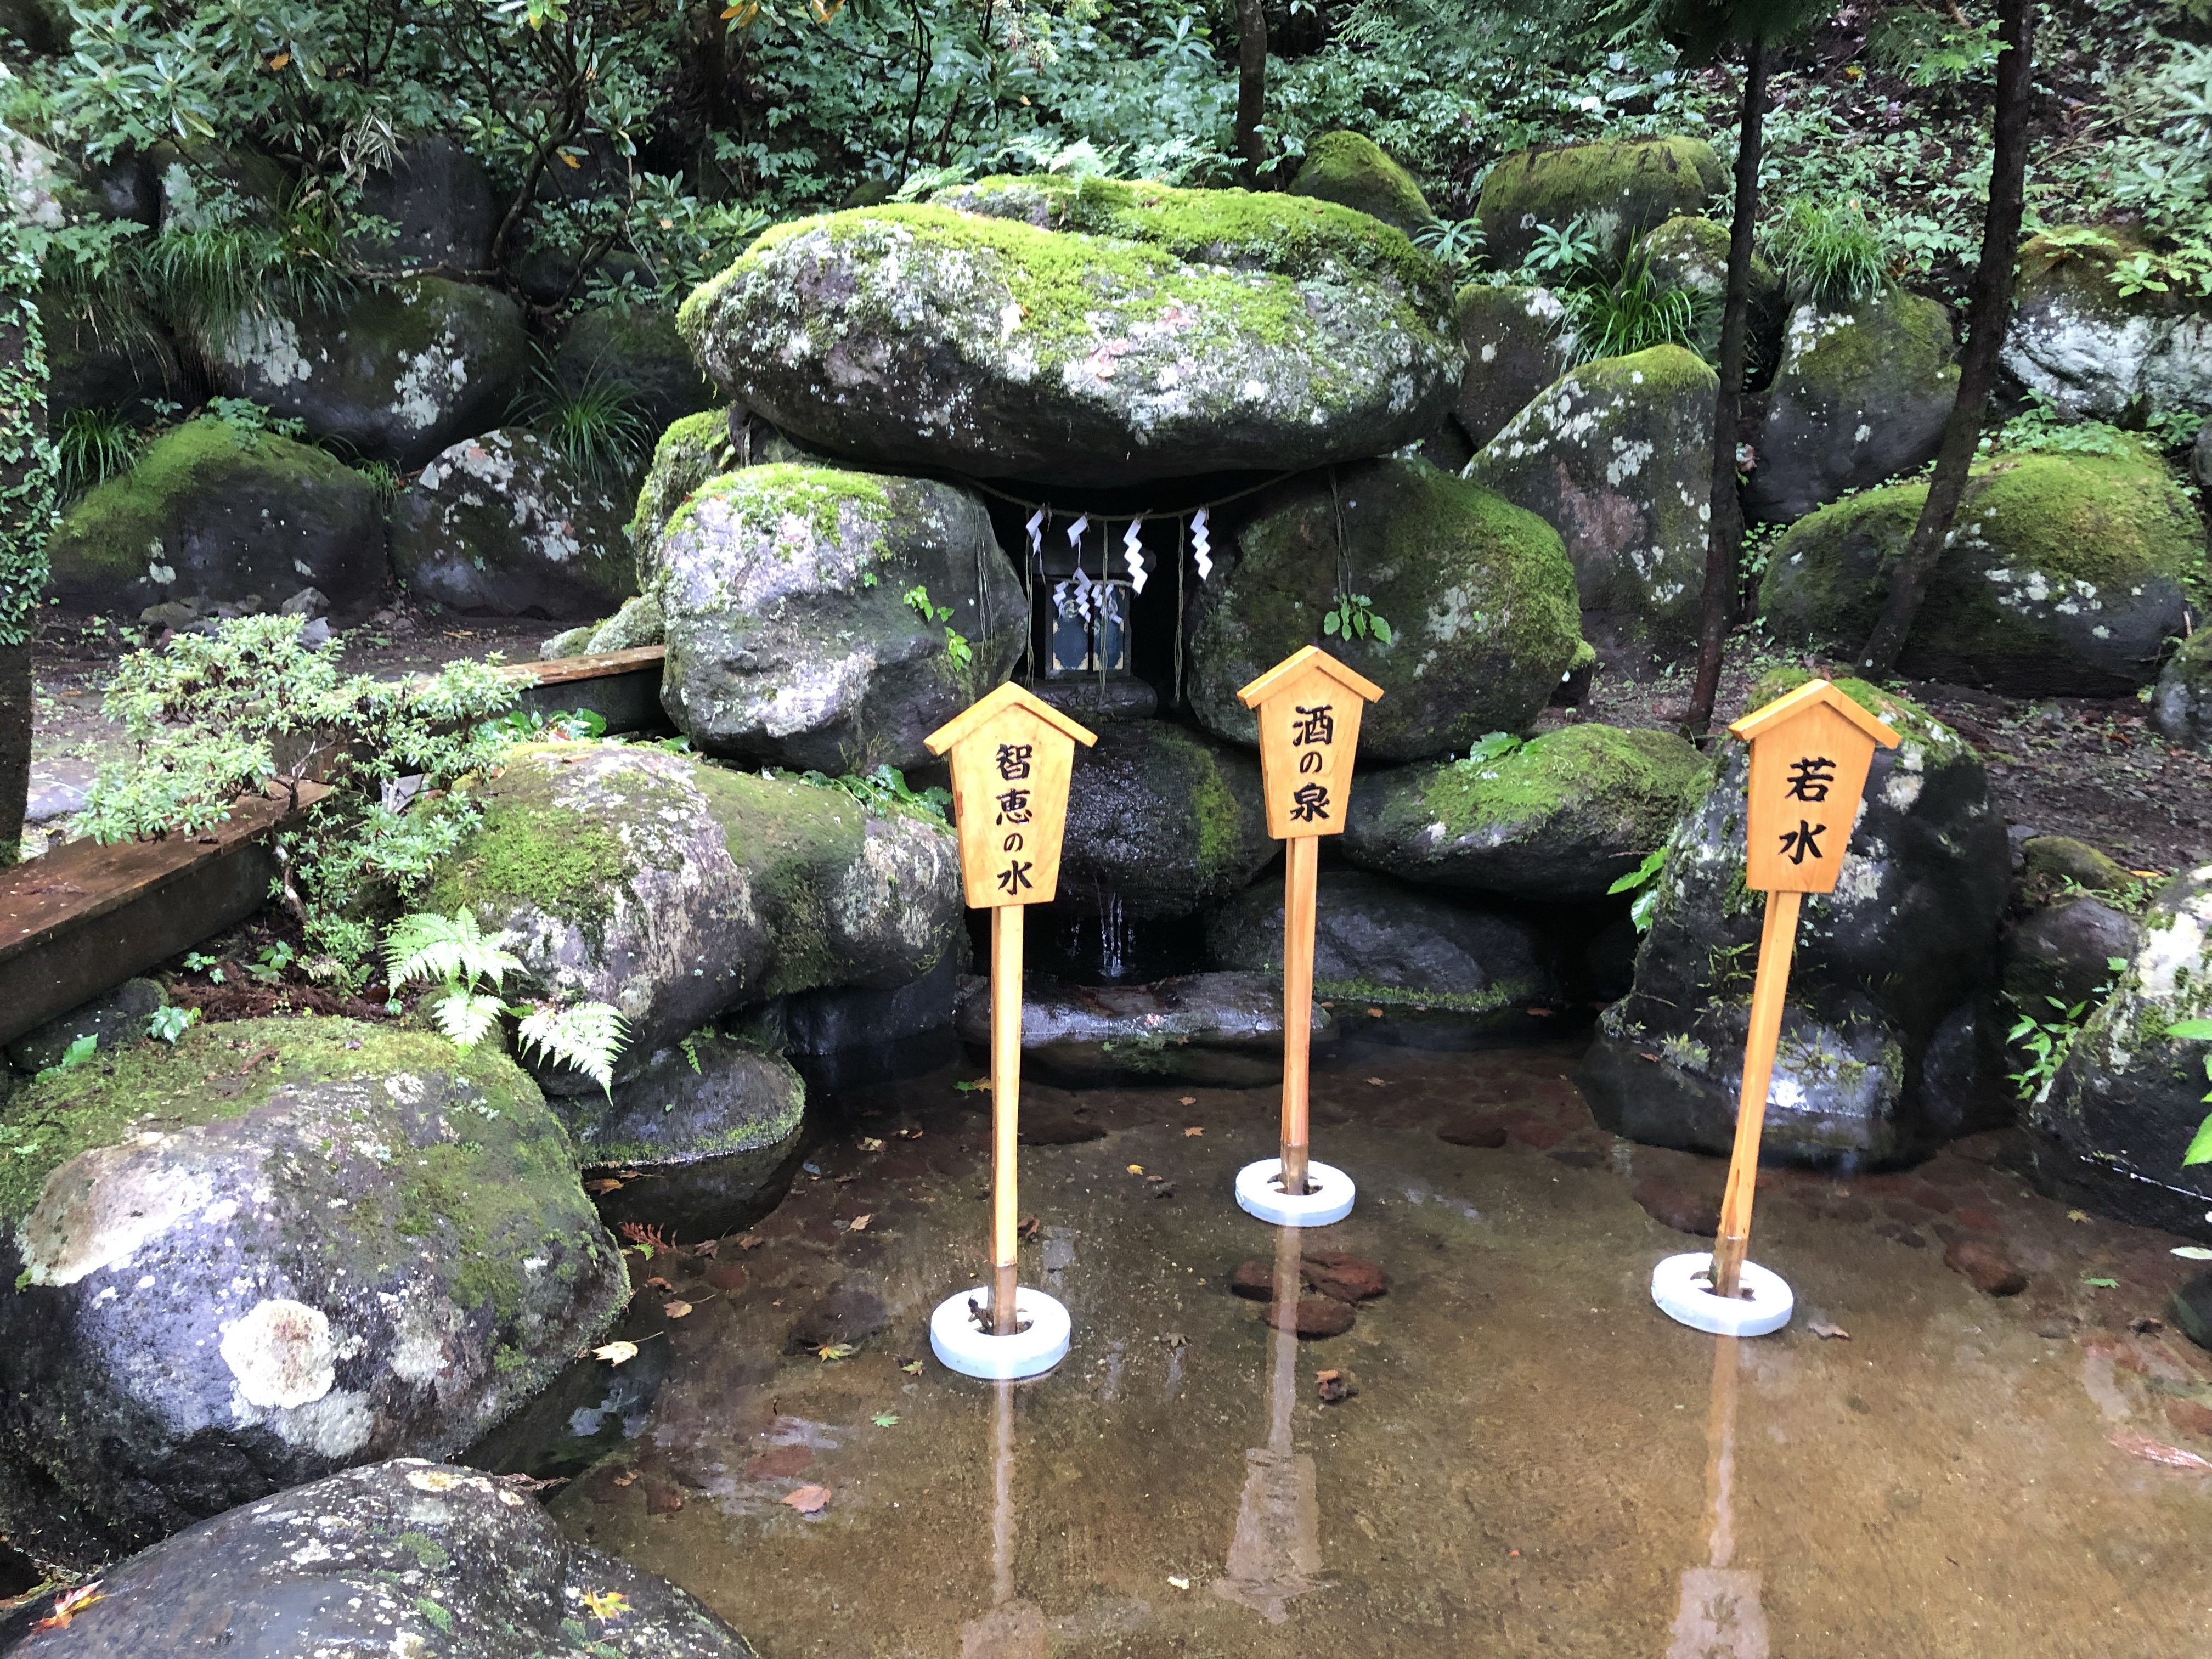 日光二荒山神社・本社神苑の中の若返りの水